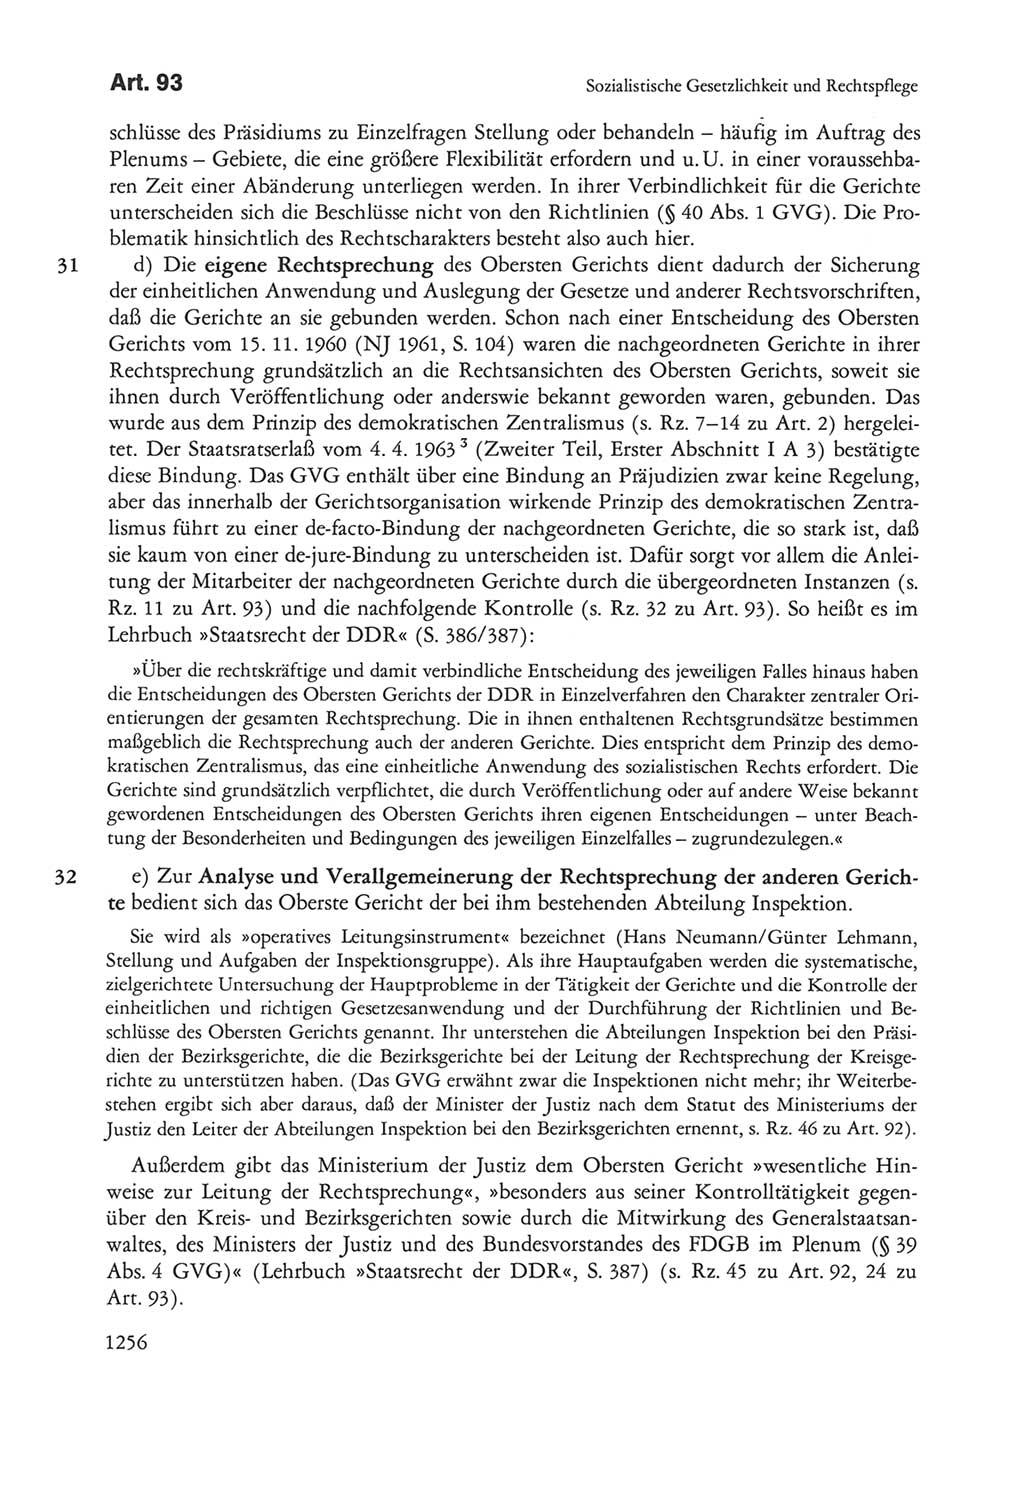 Die sozialistische Verfassung der Deutschen Demokratischen Republik (DDR), Kommentar mit einem Nachtrag 1997, Seite 1256 (Soz. Verf. DDR Komm. Nachtr. 1997, S. 1256)